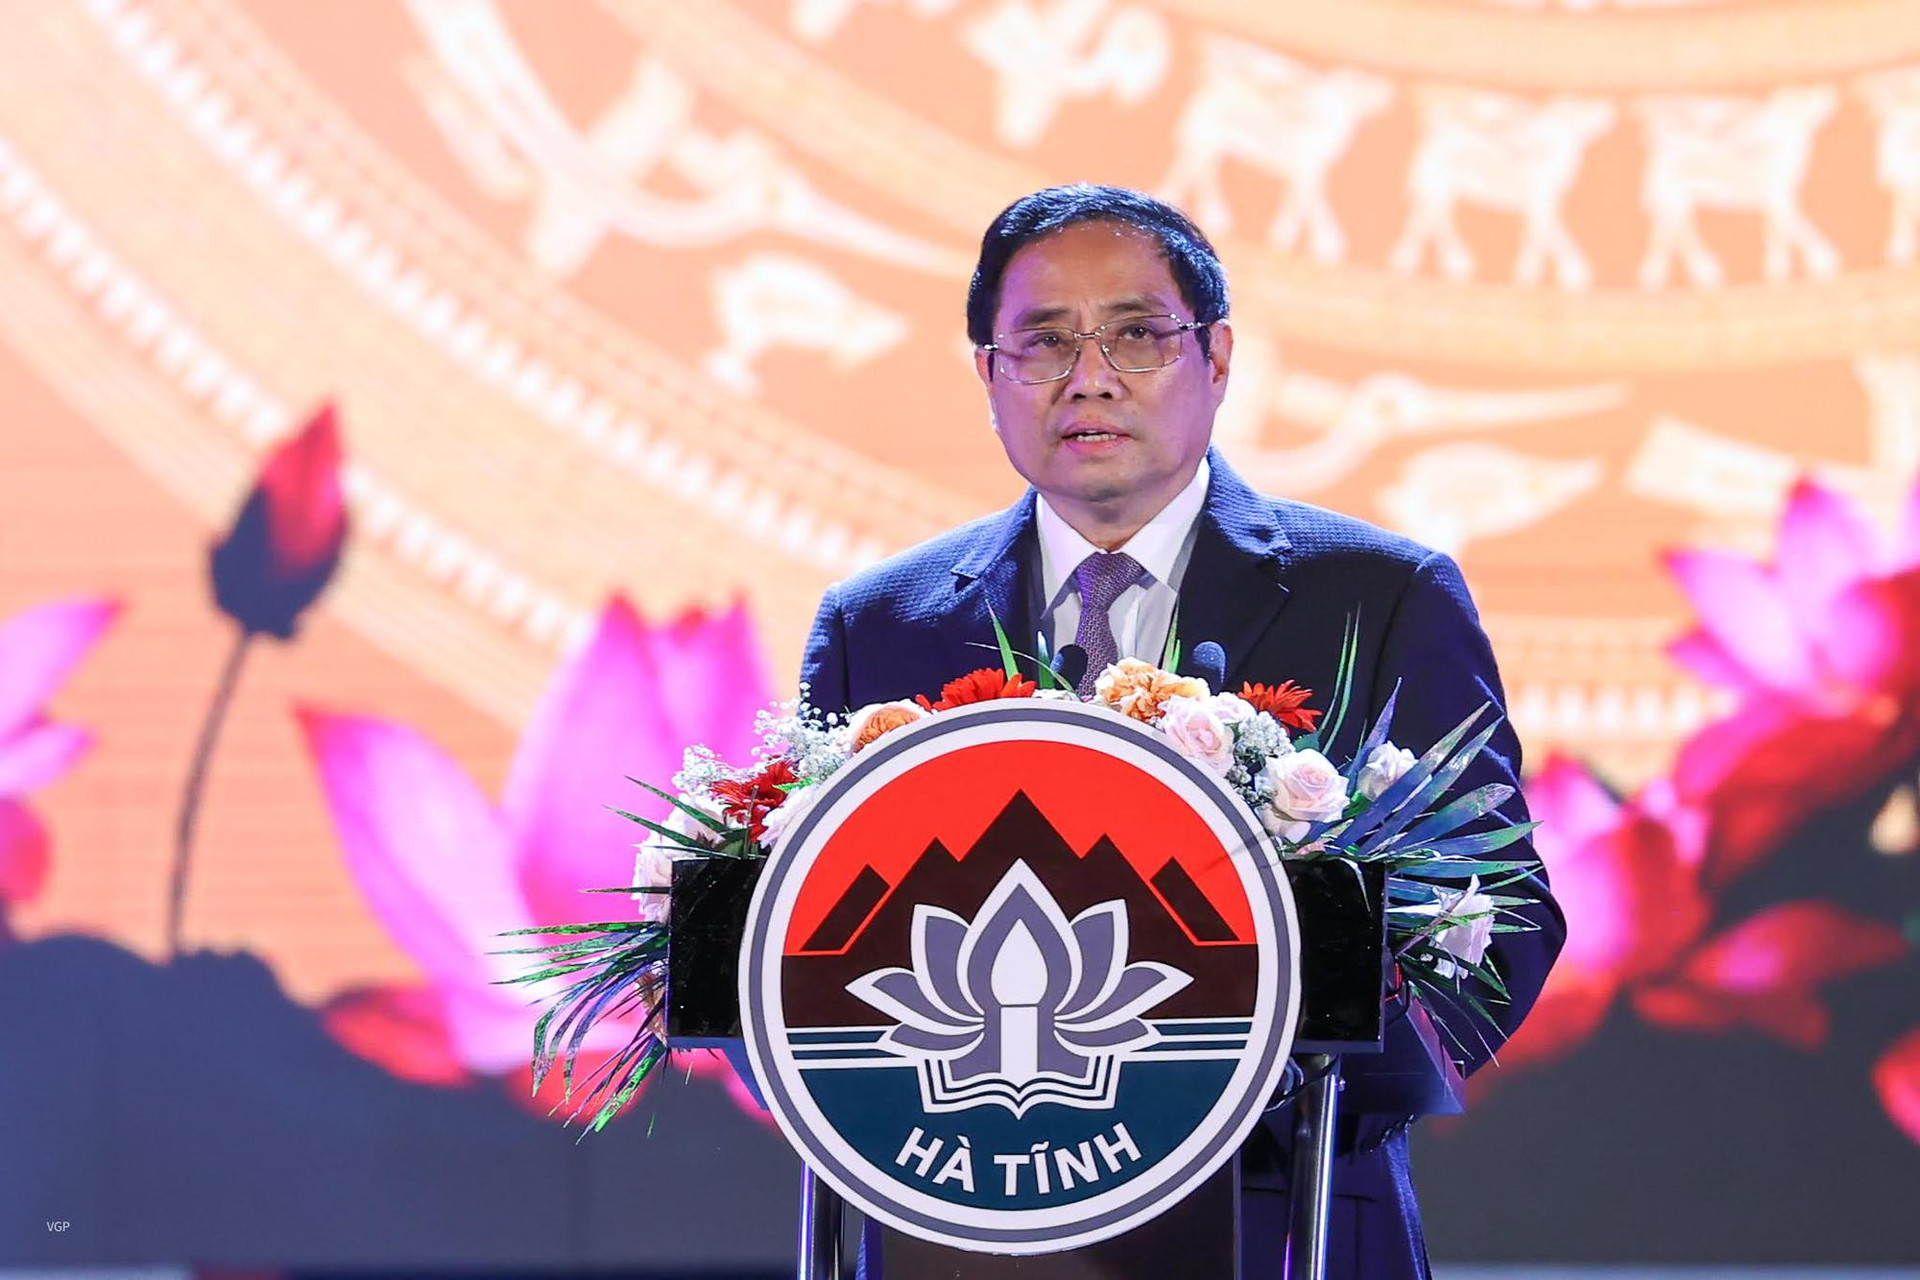 Thủ tướng Phạm Minh Chính dự Lễ kỷ niệm 65 năm ngày Bác Hồ về thăm Hà Tĩnh - Ảnh 1.